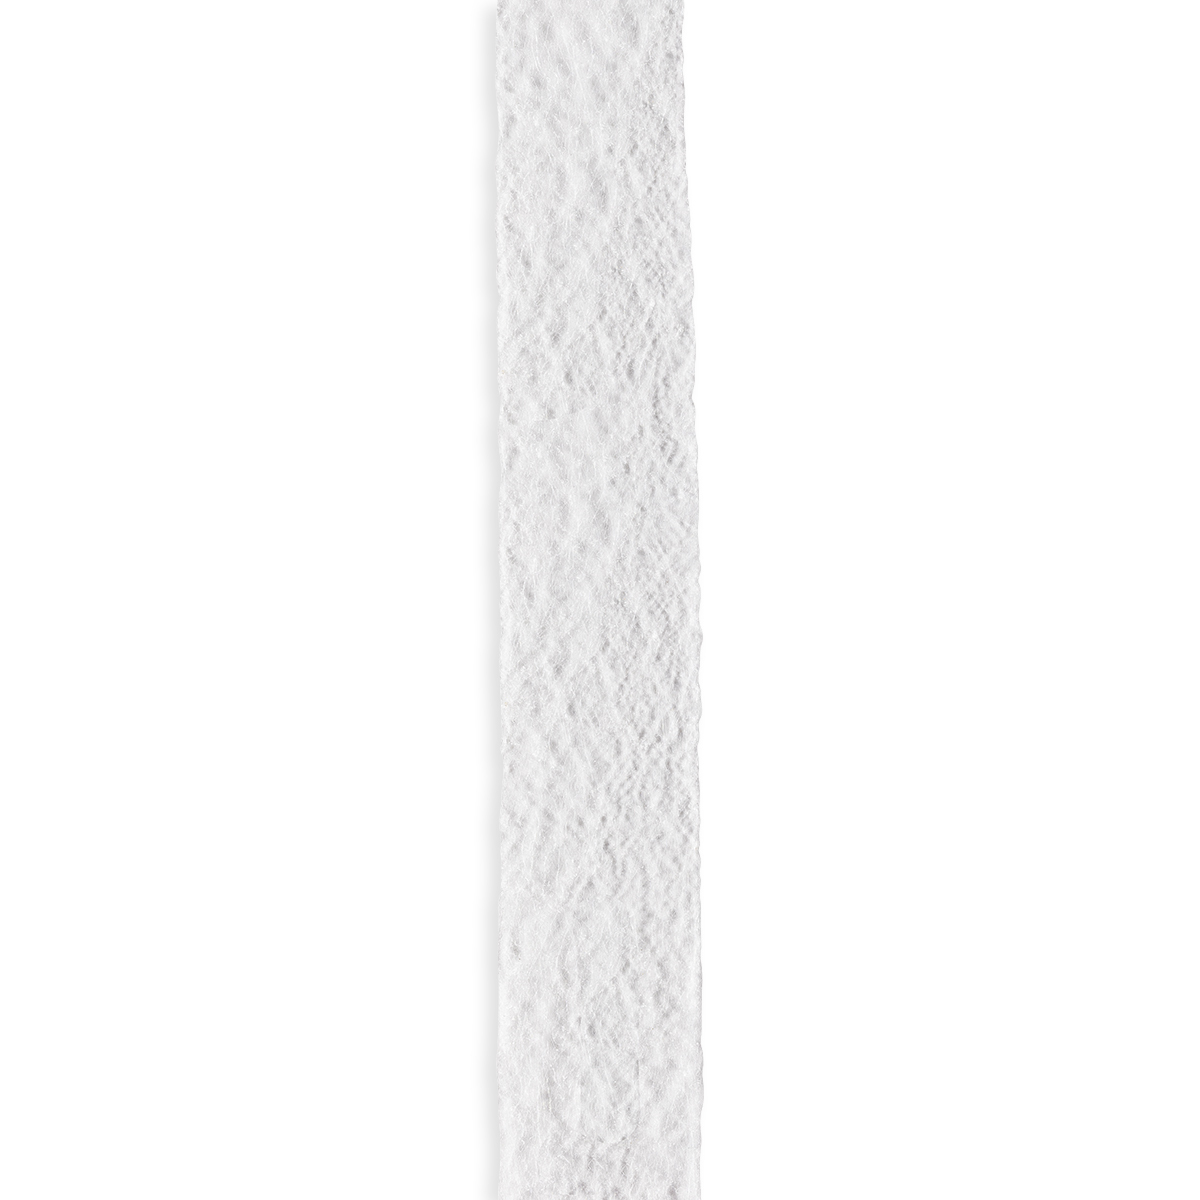 2 Stück Weiß normales Gewicht Dritz Stitch Witchery Bindebänder 1,5 cm x 20 m